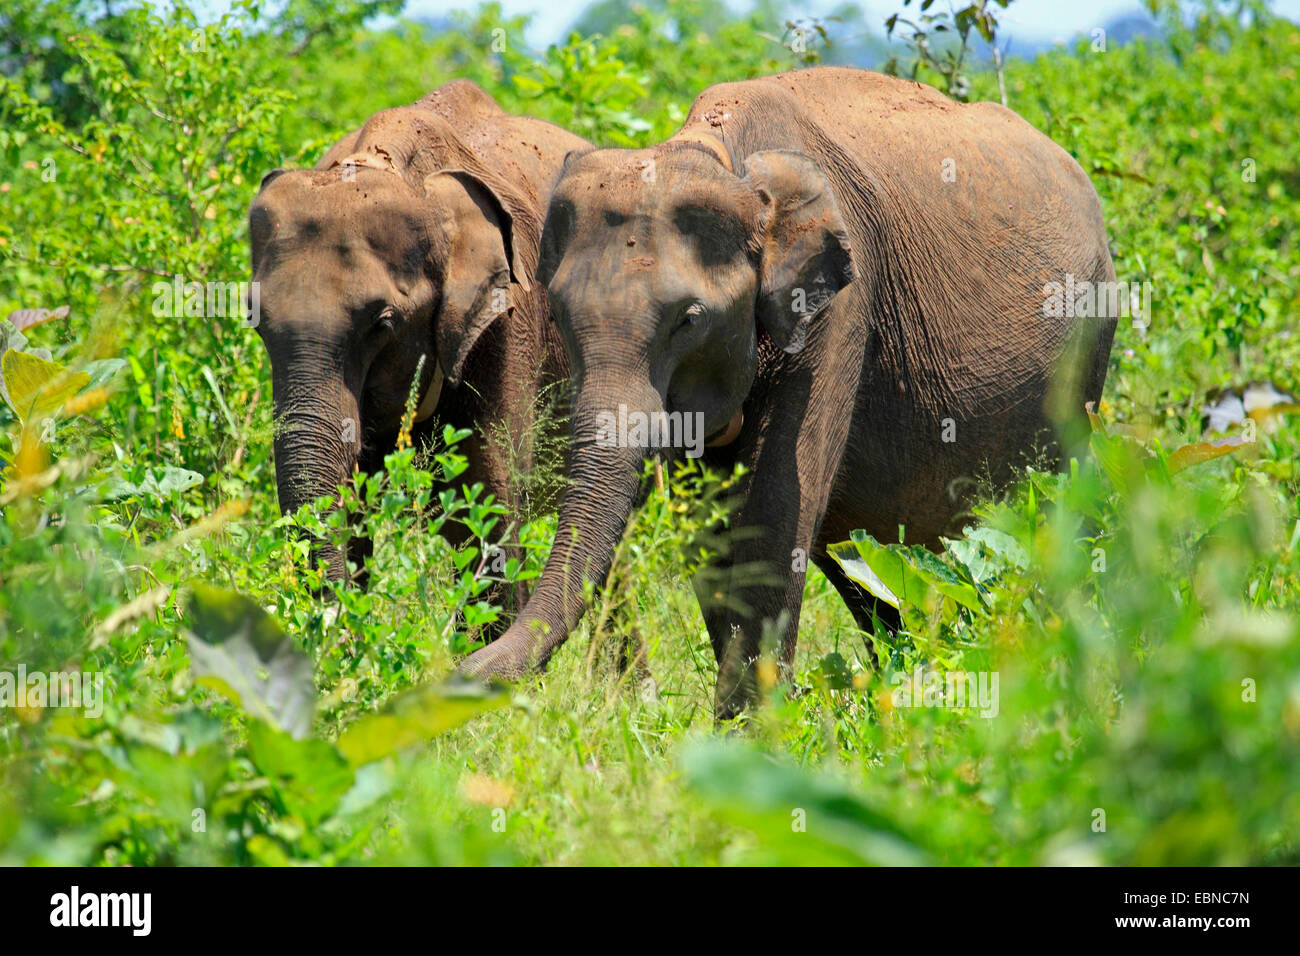 Sri Lanka Elephant, Asiatic elephant, Asian elephant (Elephas maximus, Elephas maximus maximus), two elephants standing in the bushes and feeding, Sri Lanka, Udawalawe National Park Stock Photo